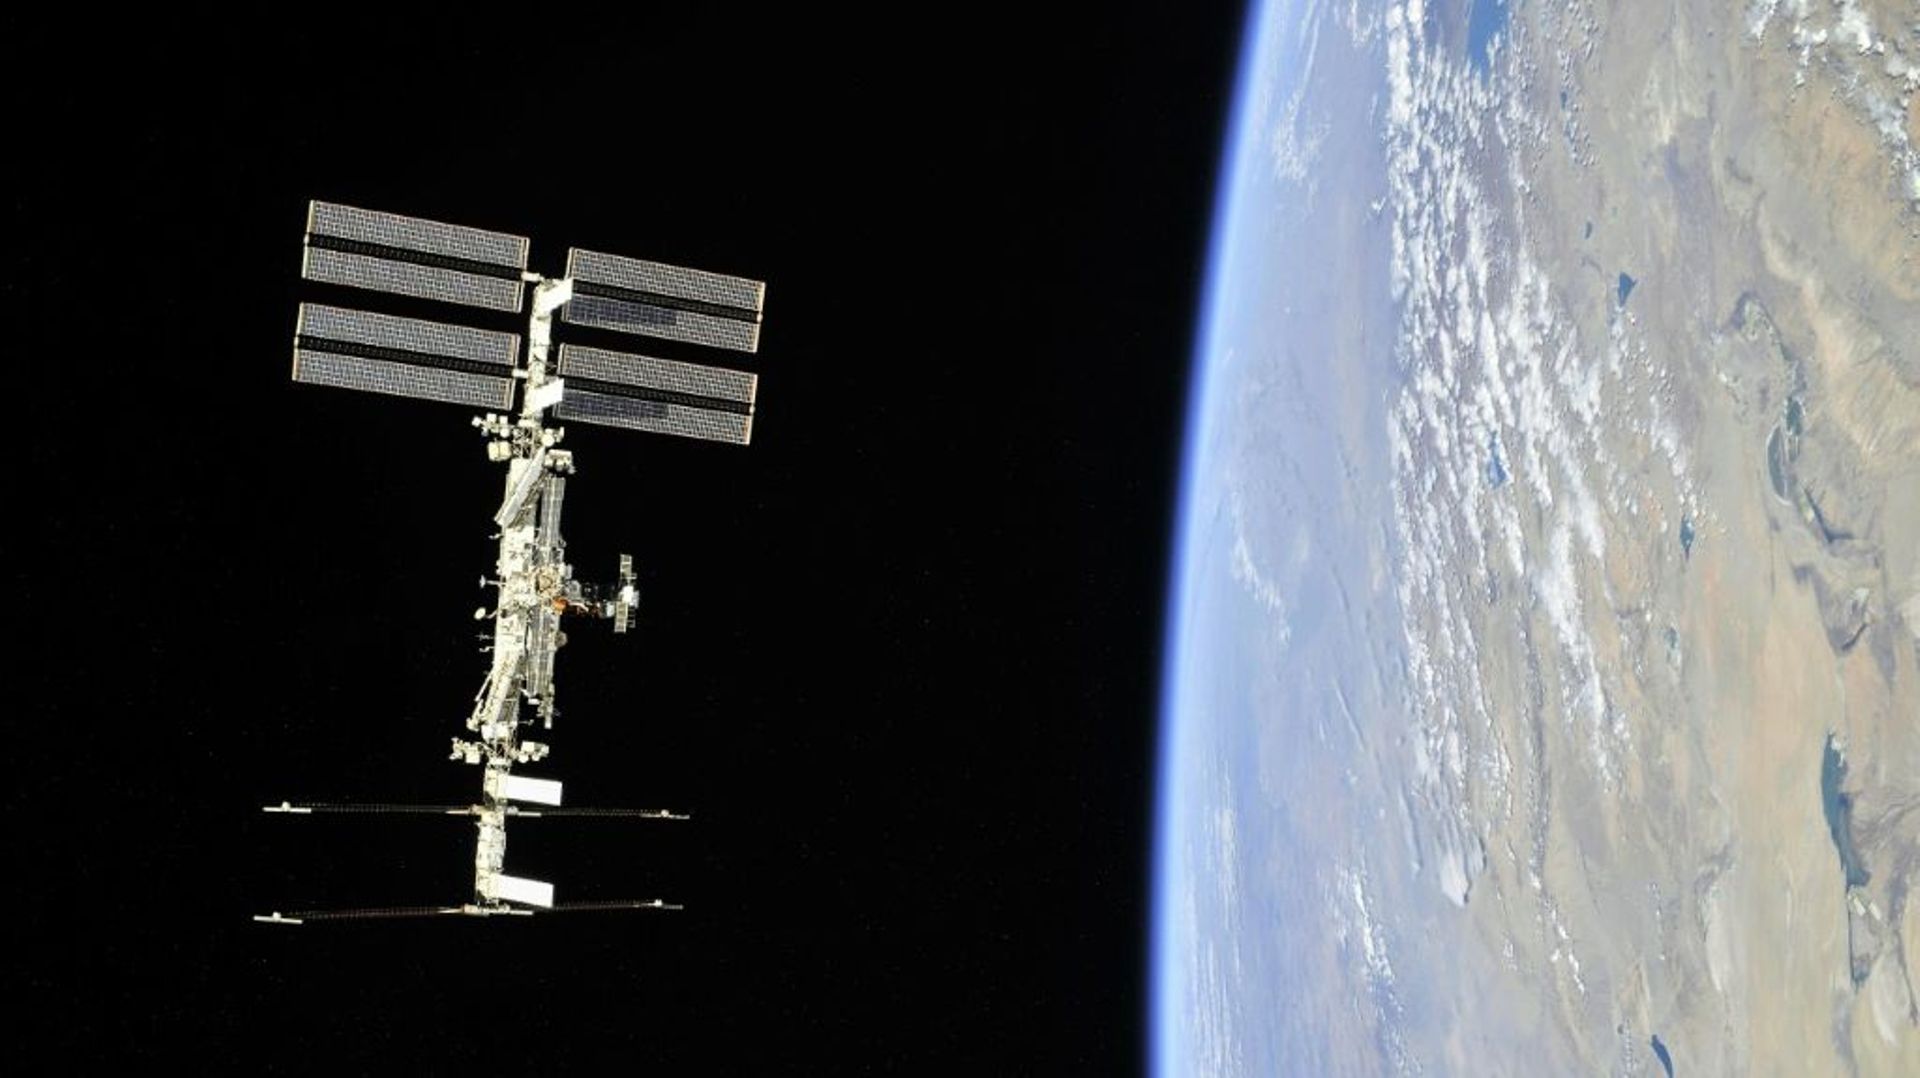 La passeggiata spaziale russa è stata interrotta a causa di una causa legale